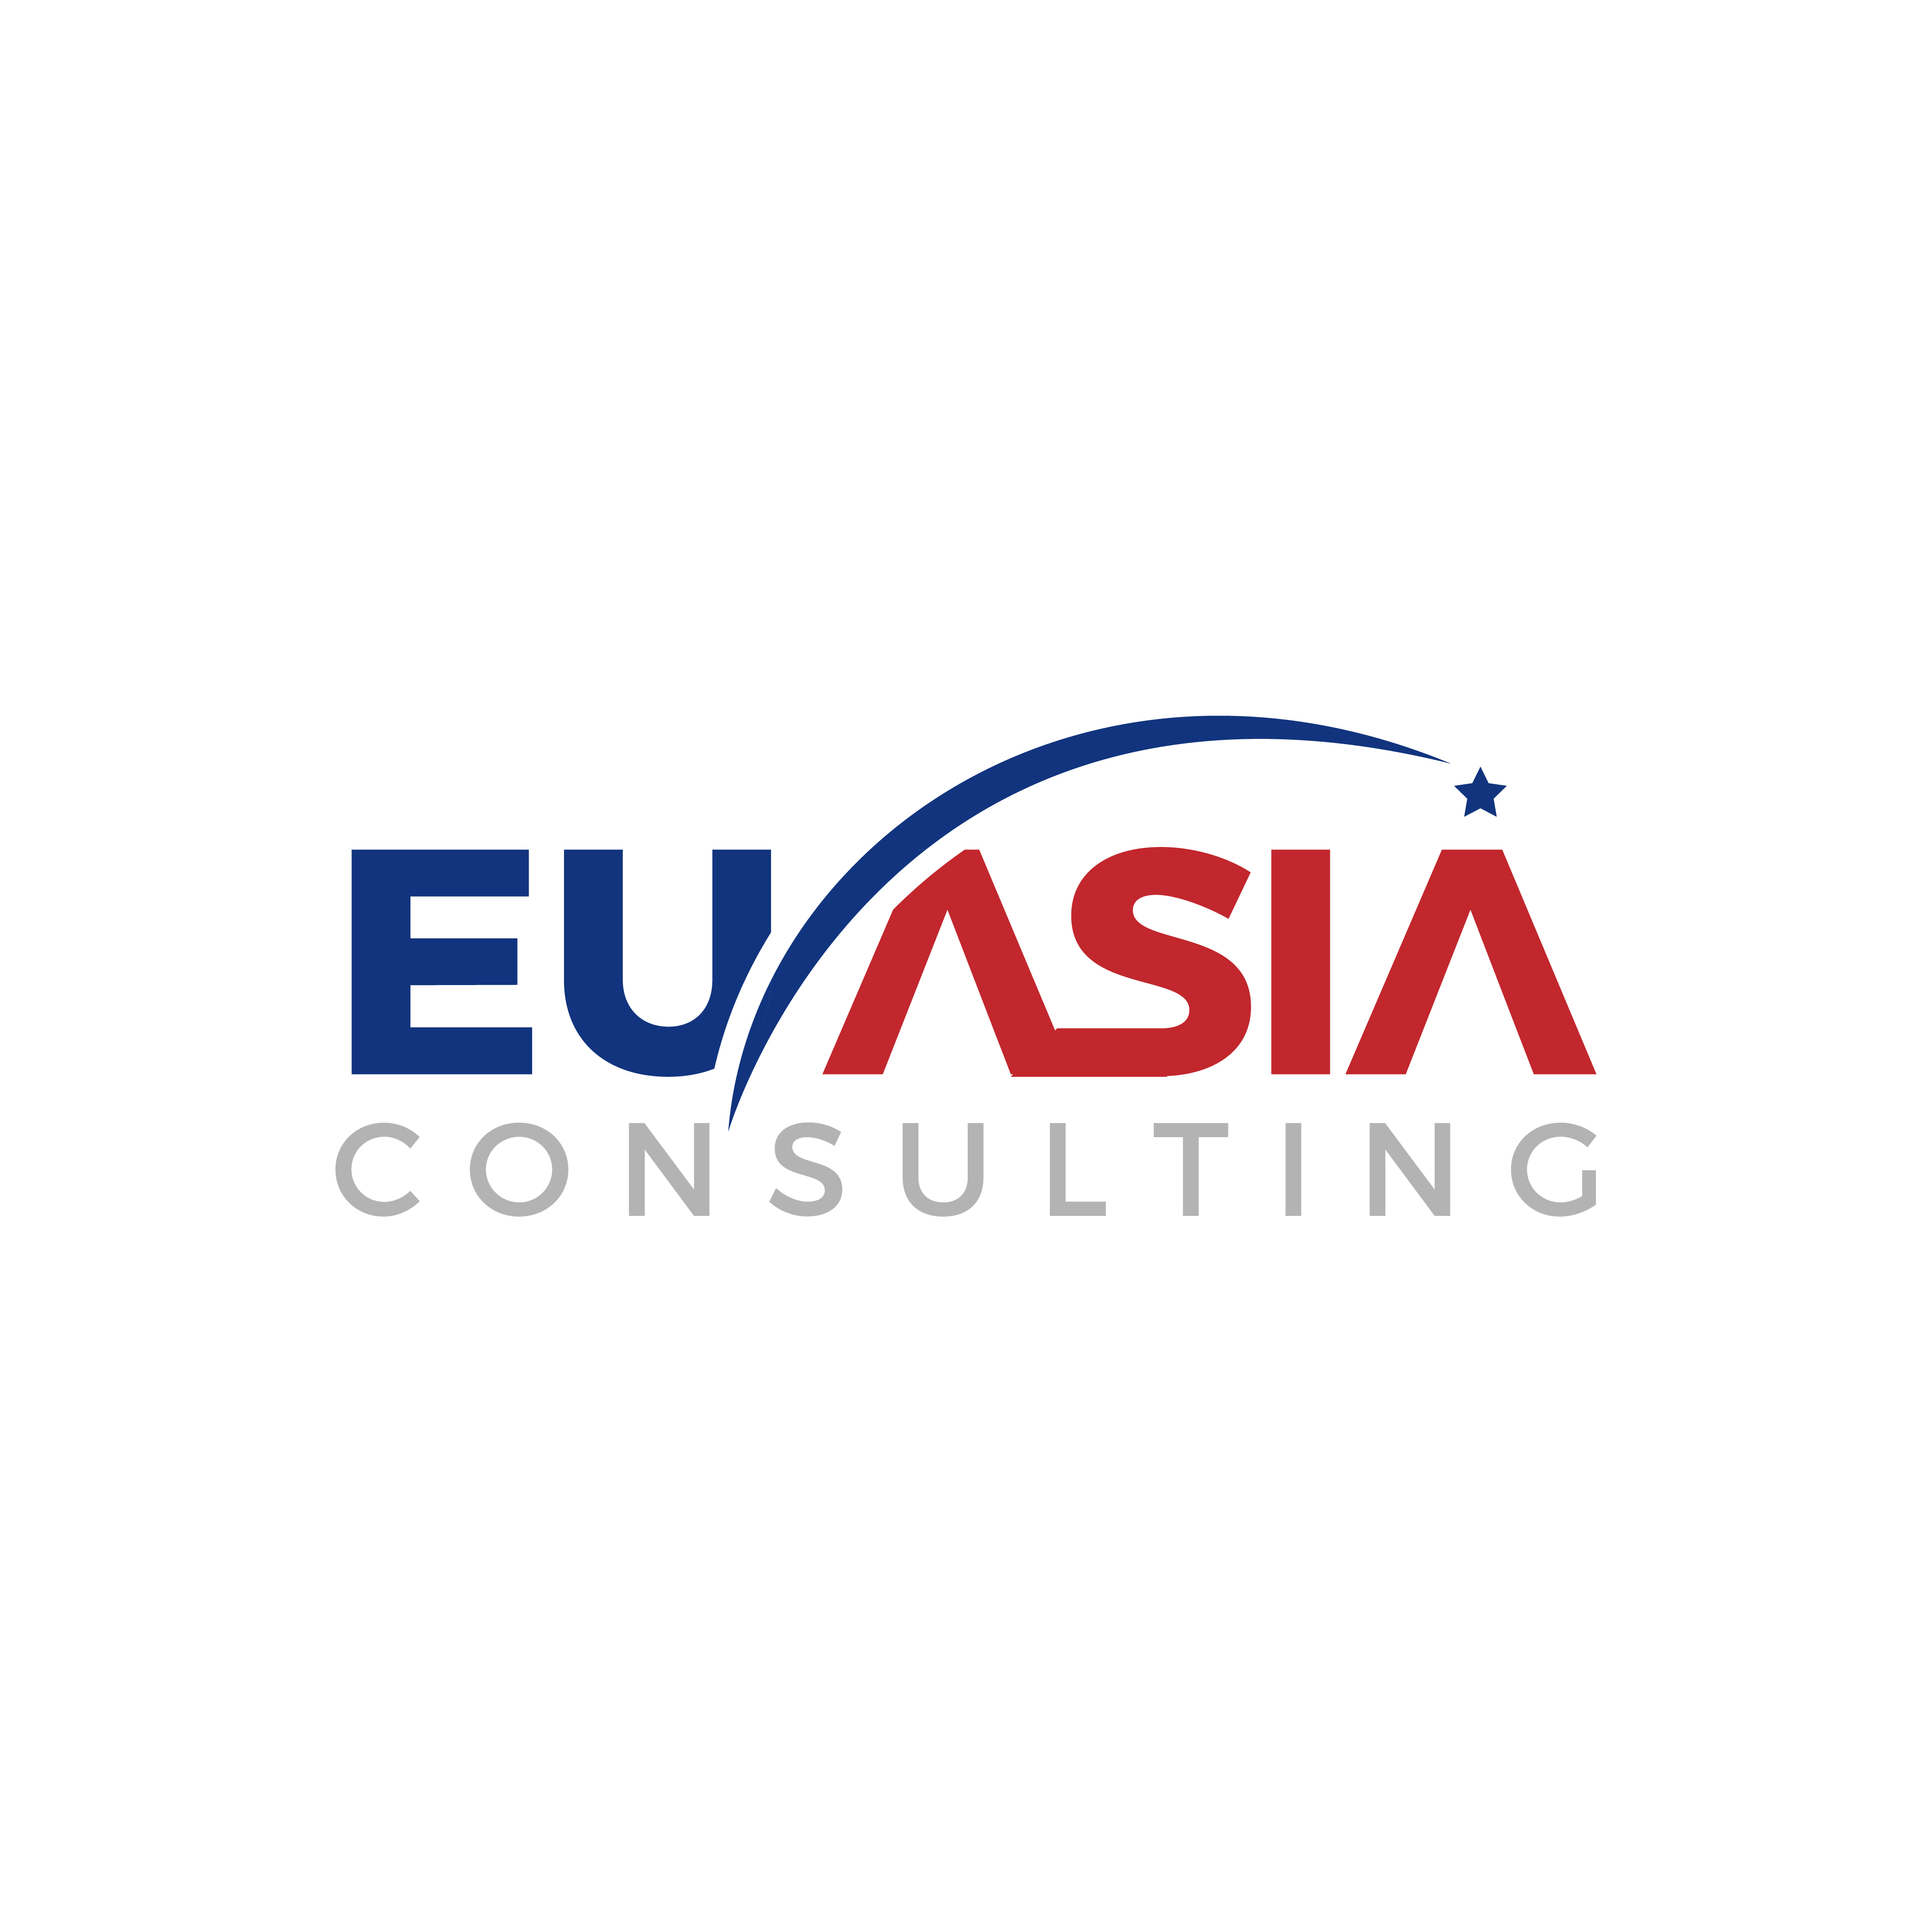 EU Asia Consulting